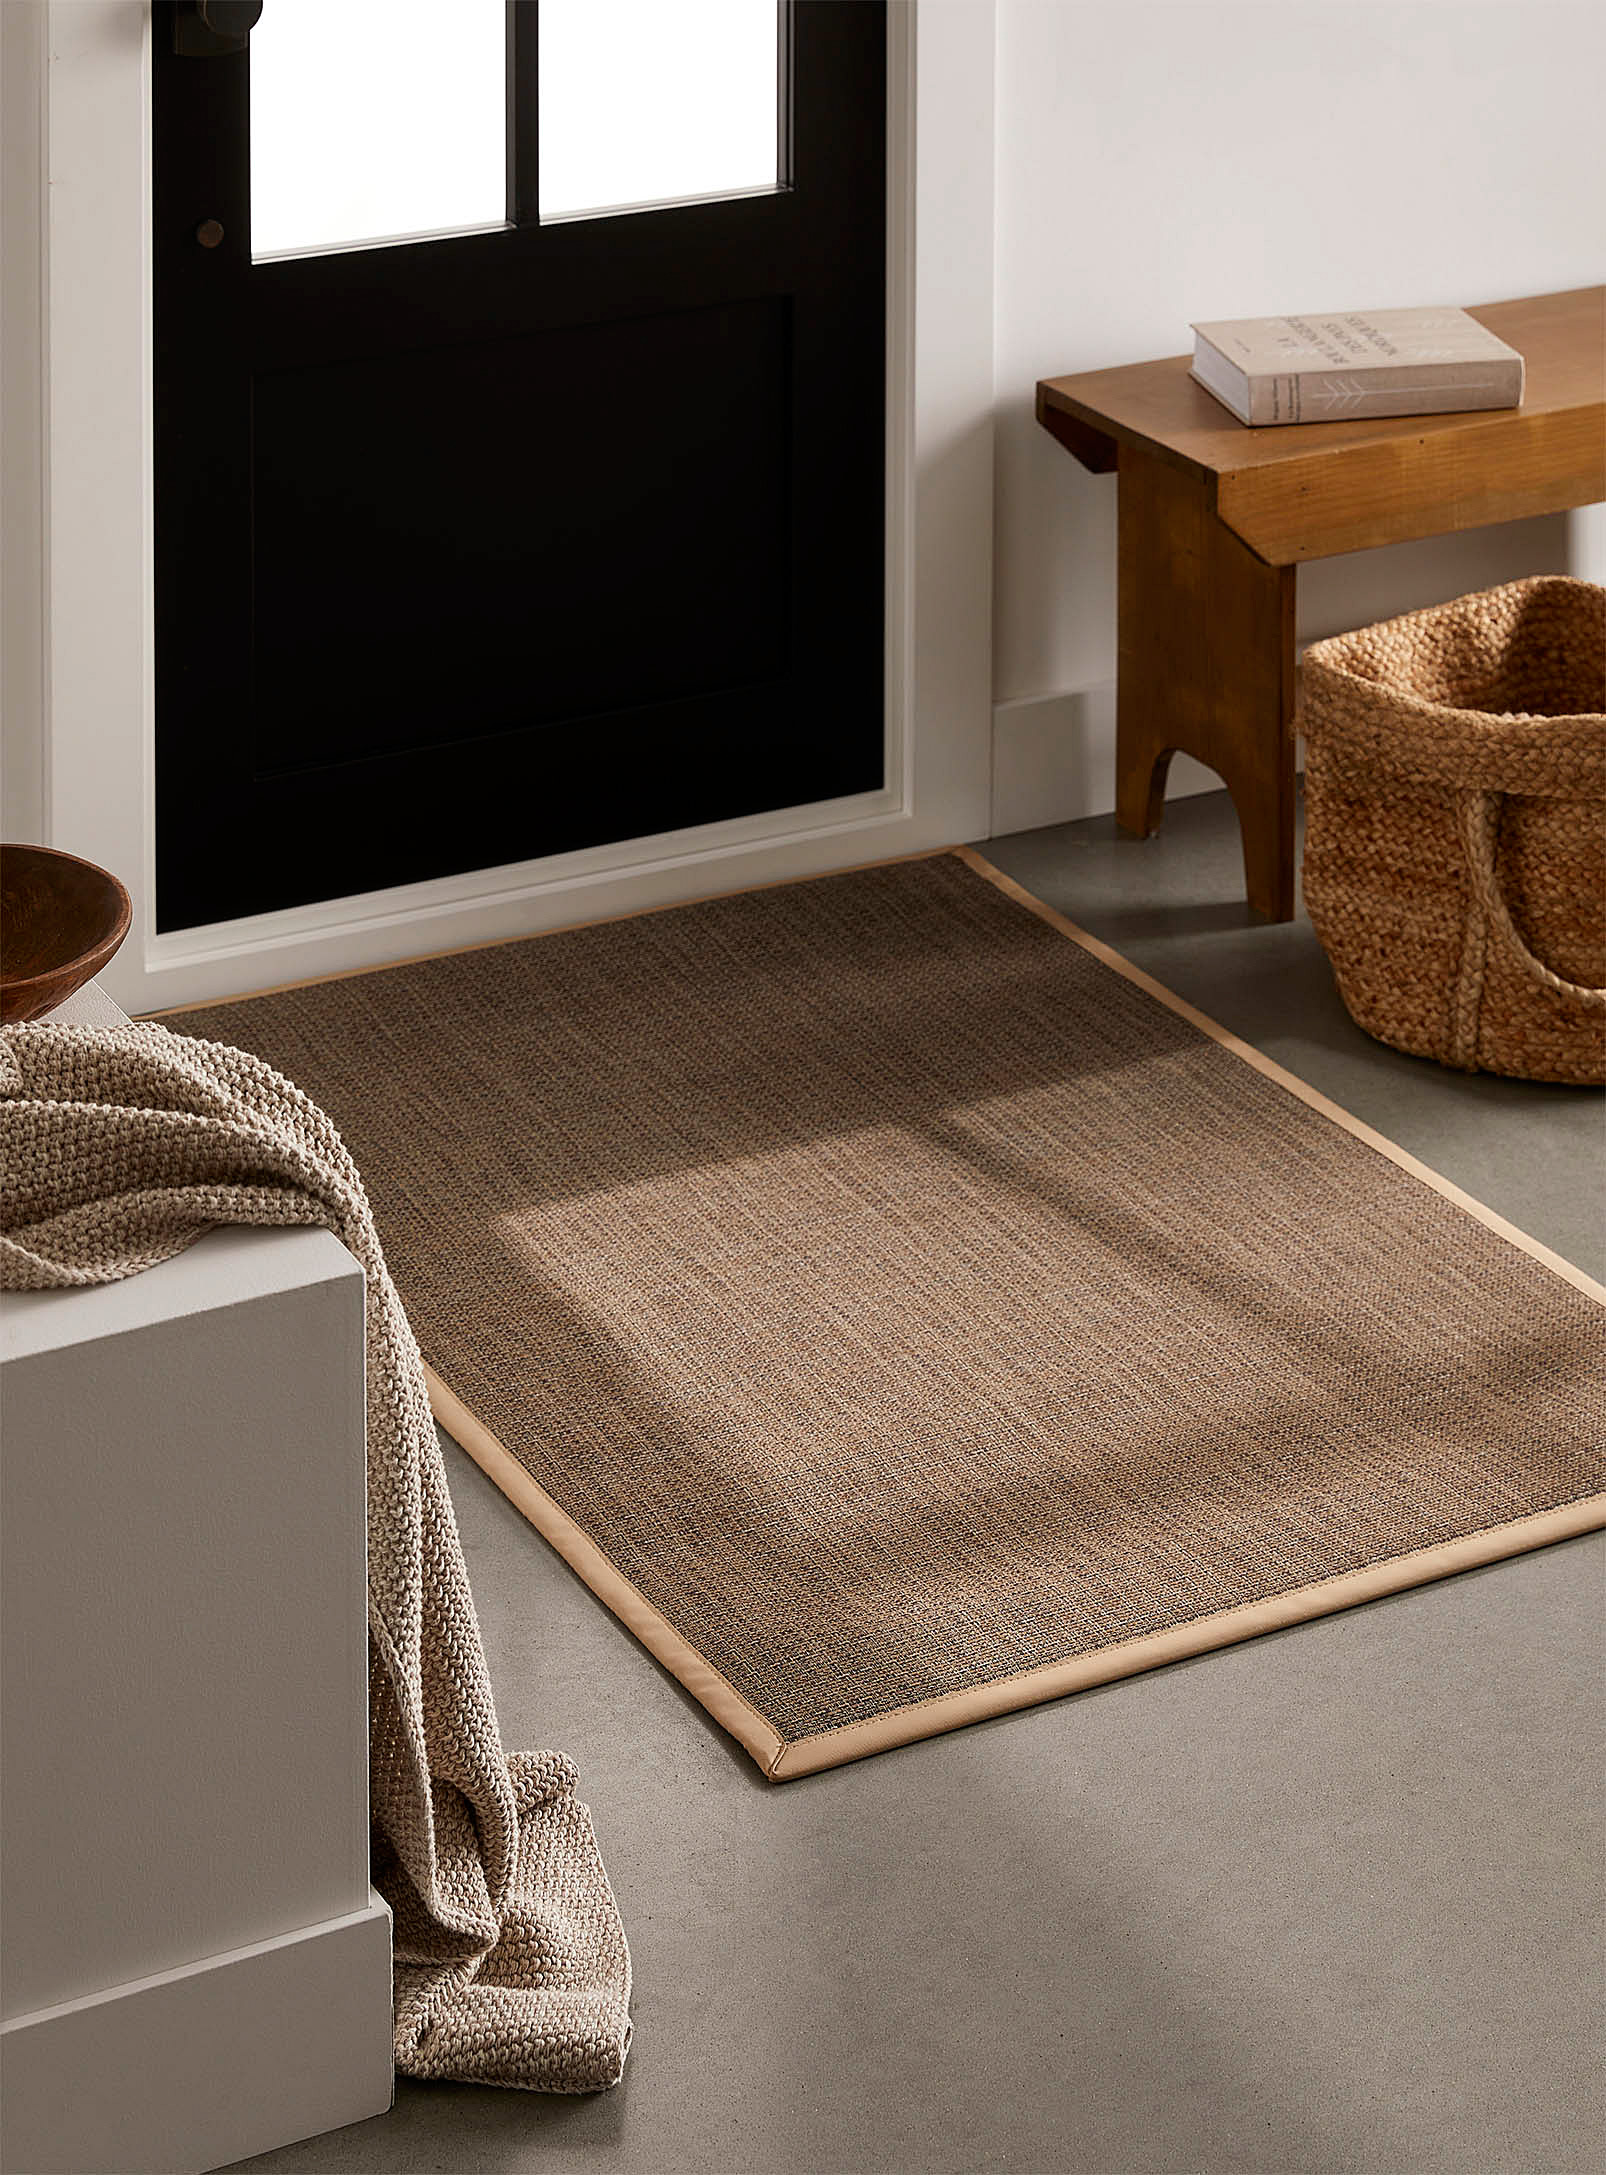 Simons Maison - Le tapis antidérapant tissage chiné 90 x 130 cm